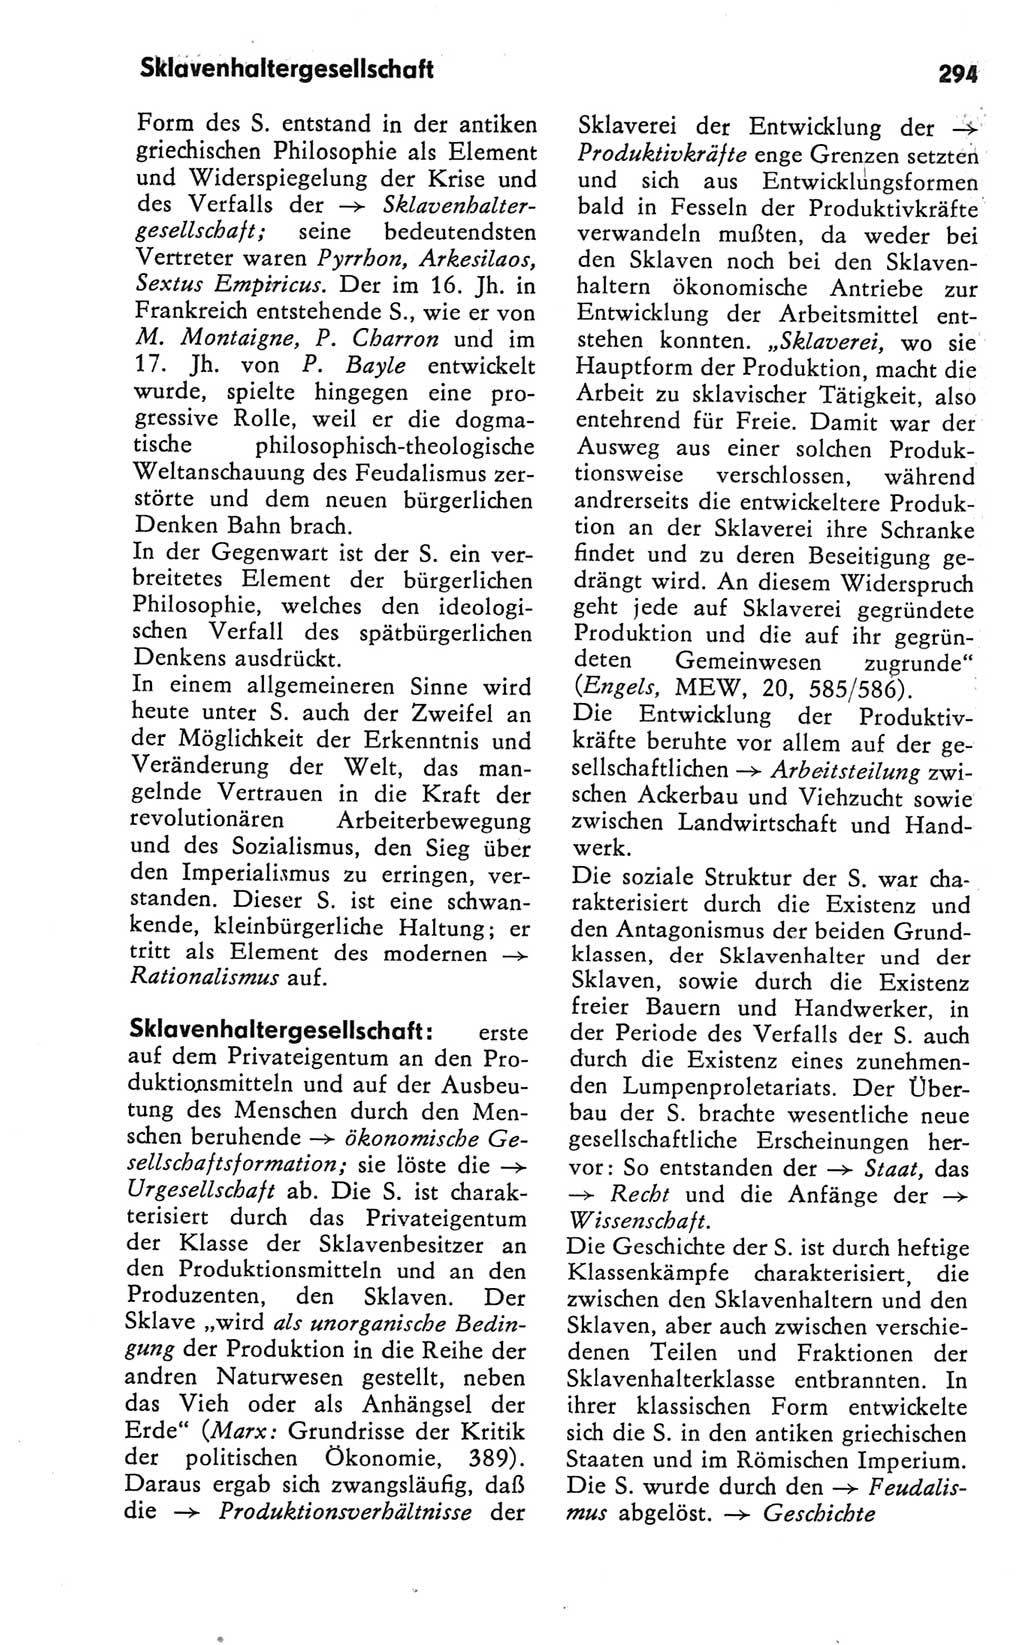 Kleines Wörterbuch der marxistisch-leninistischen Philosophie [Deutsche Demokratische Republik (DDR)] 1981, Seite 294 (Kl. Wb. ML Phil. DDR 1981, S. 294)